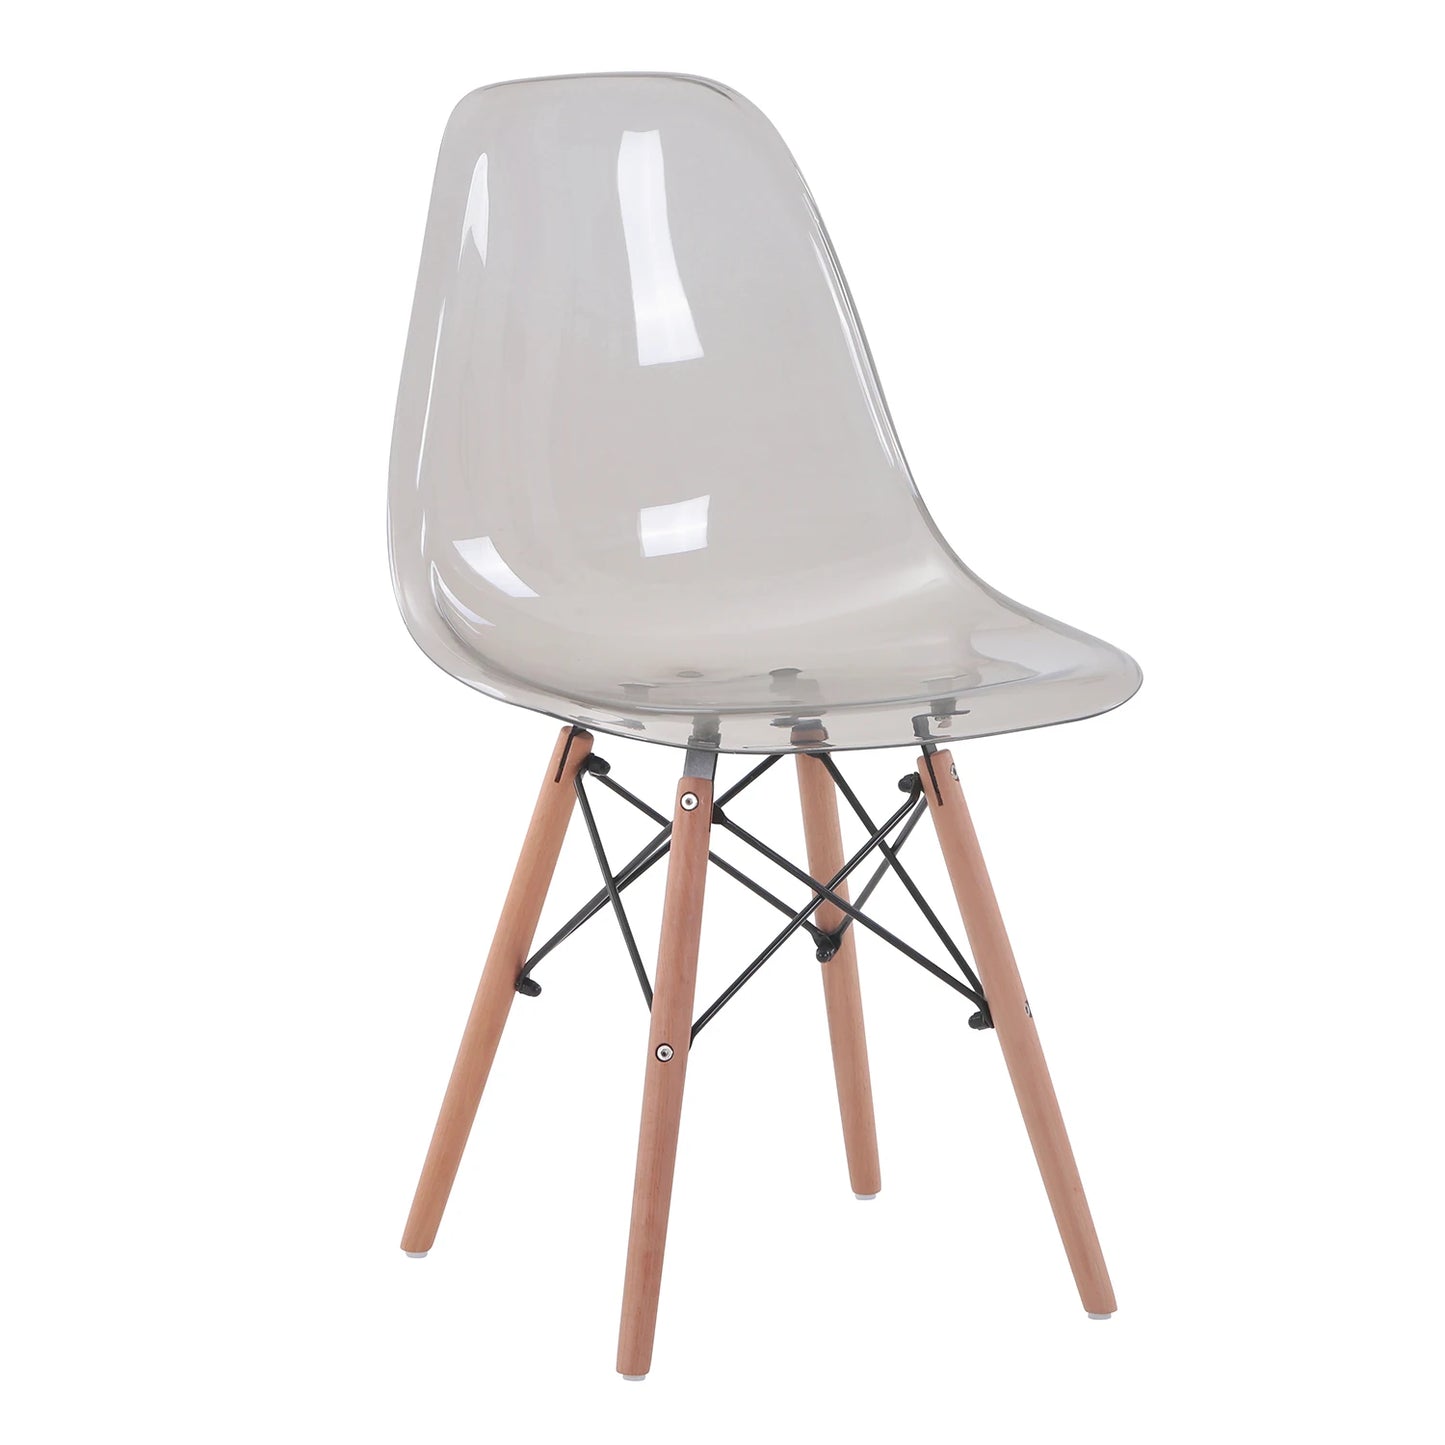 Een set van 4 transparante eetkamerstoelen. Moderne plastic stoelen, kristallen stoelen met houten poten voor keuken, woonkamer, eetkamer.